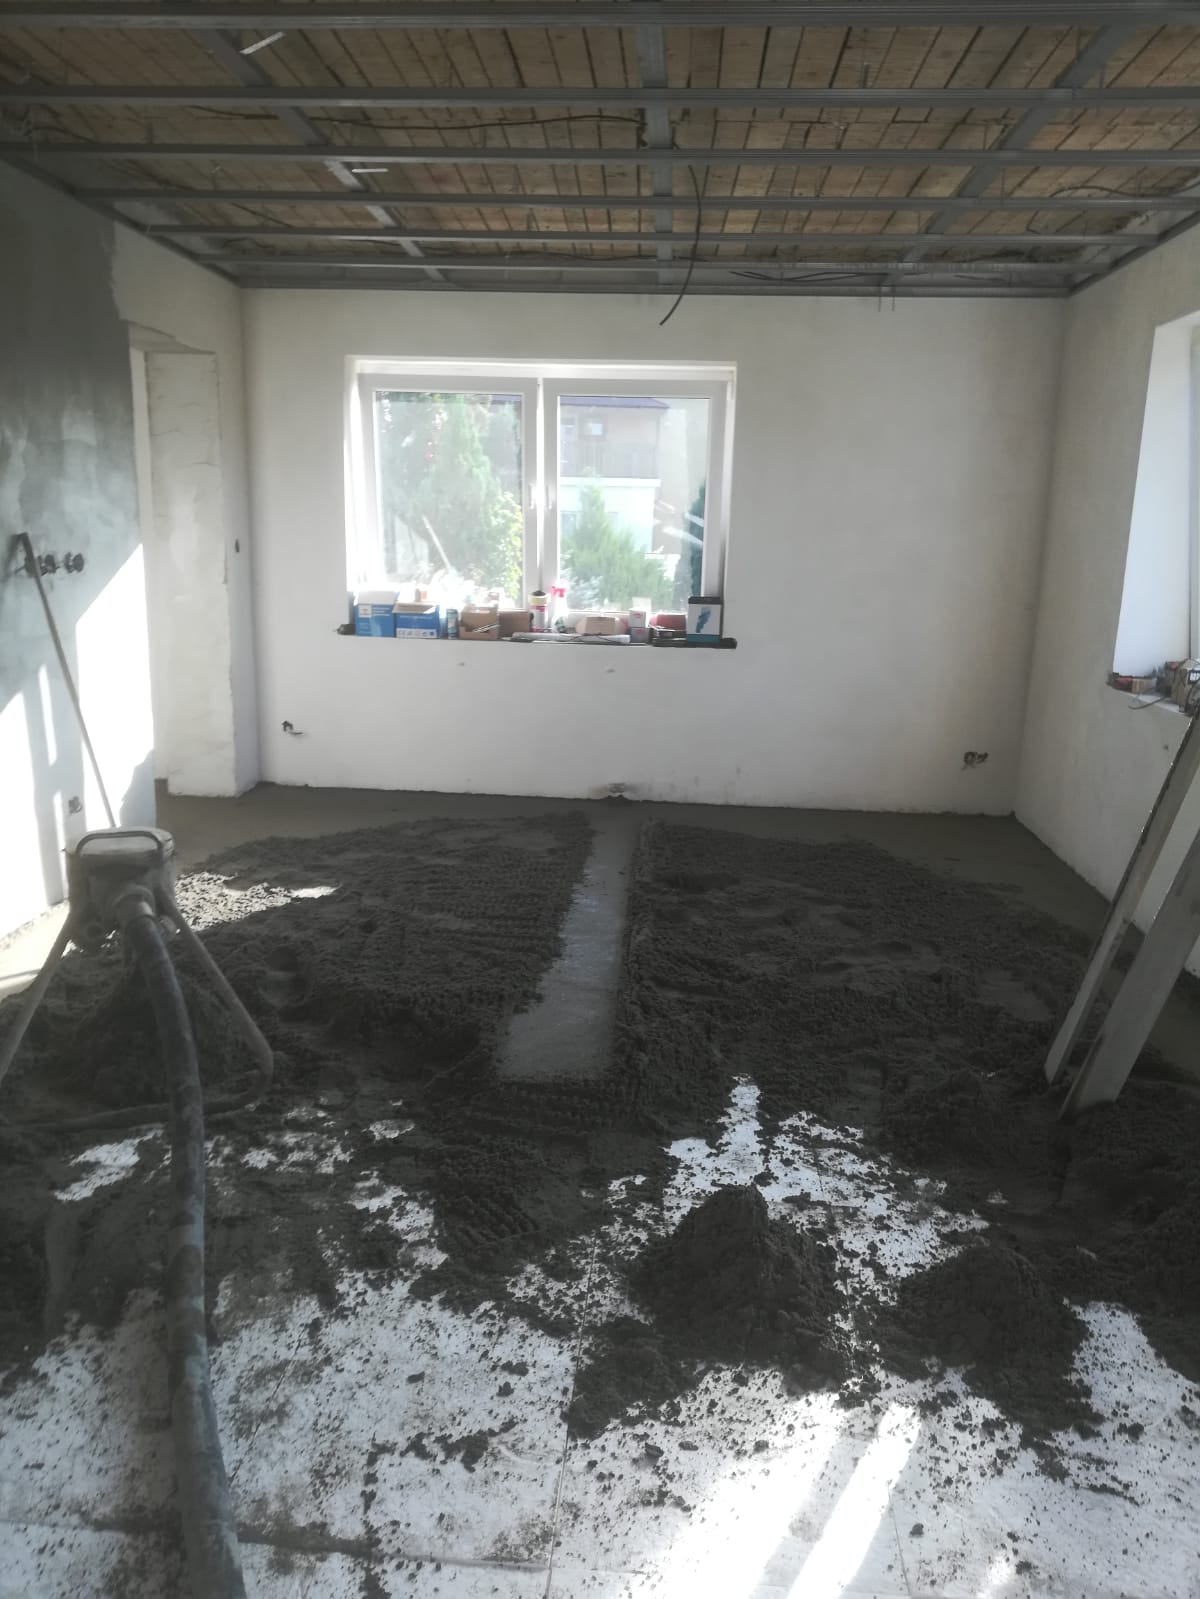 Rekonstrukce 🏡 20/21 - Vylití podlah betonem